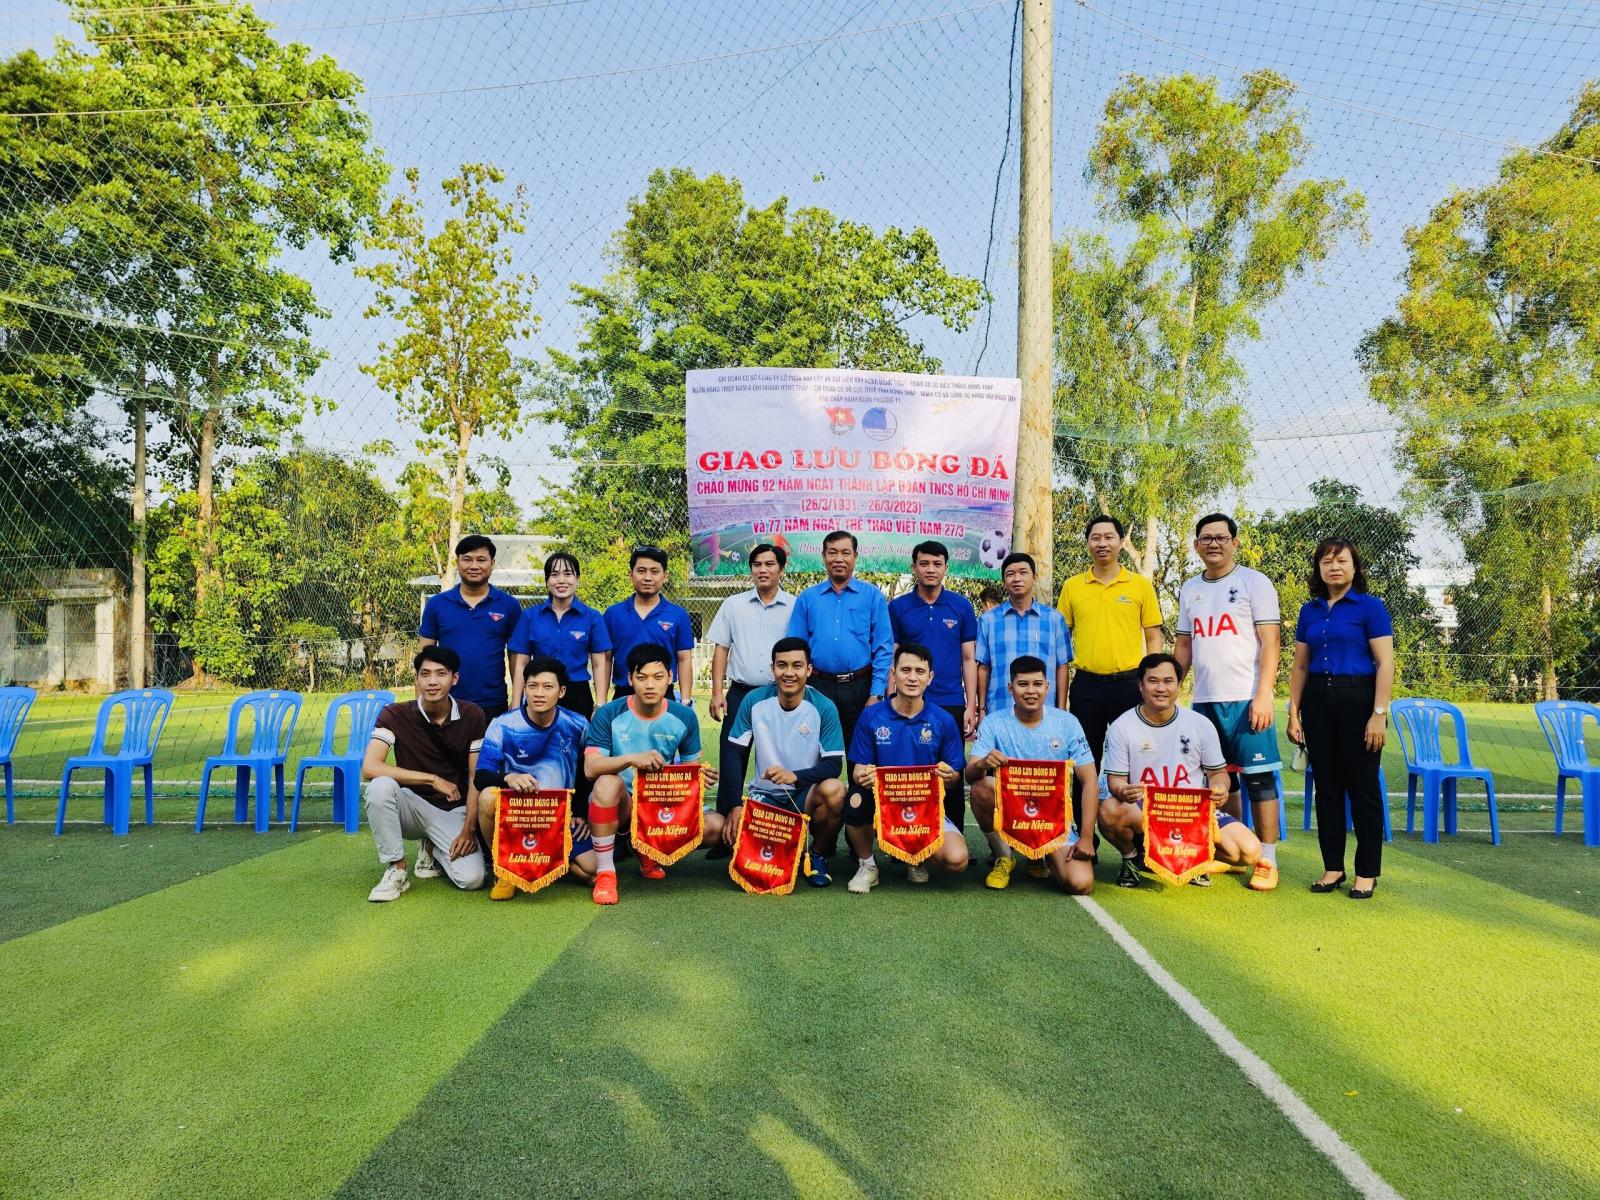 Giao lưu bóng đá chào mừng kỷ niệm 92 năm ngày thành lập Đoàn TNCS Hồ Chí Minh 26/3 và 77 năm ngày Thể thao Việt Nam 27/3